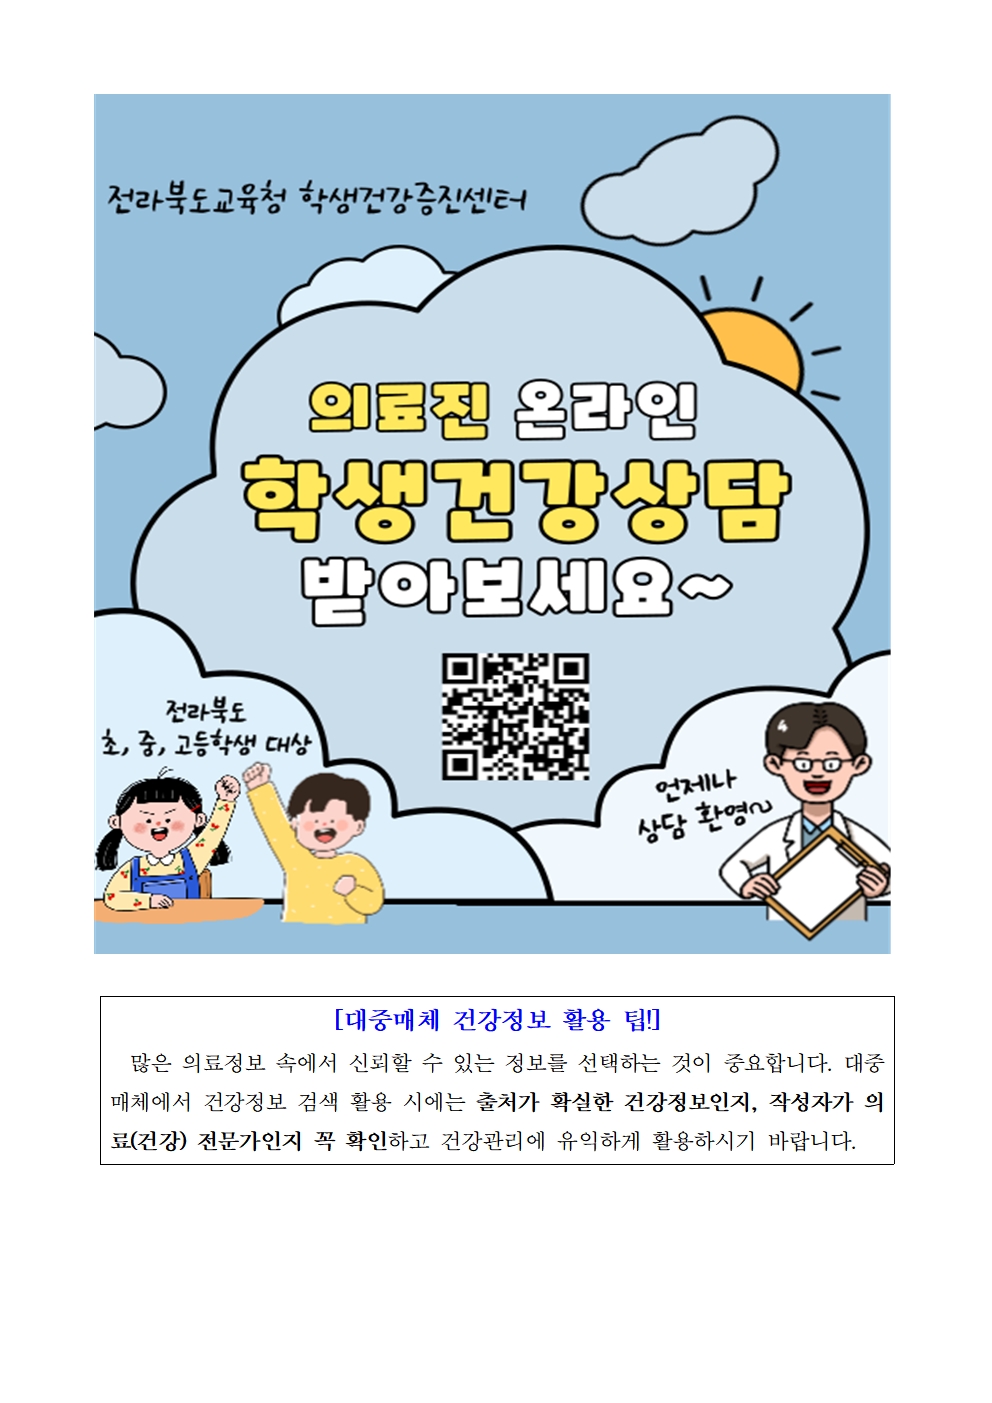 전라북도교육청 홈페이지 학생건강상담 게시판 이용 방법 안내002